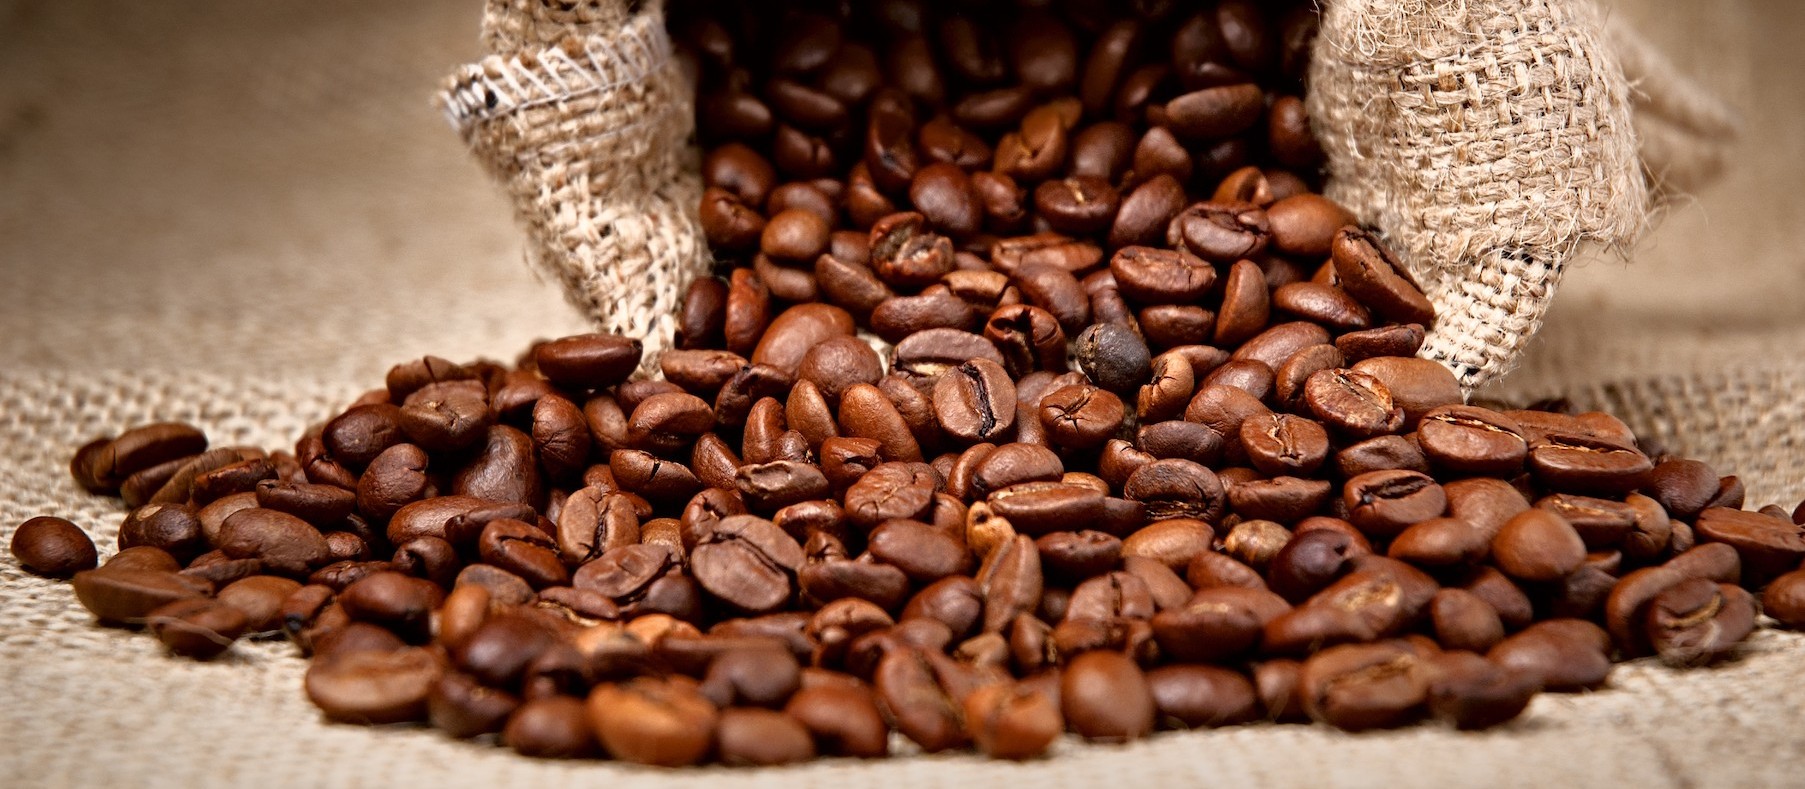 Saca do café custa R$ 369 na região de Maringá